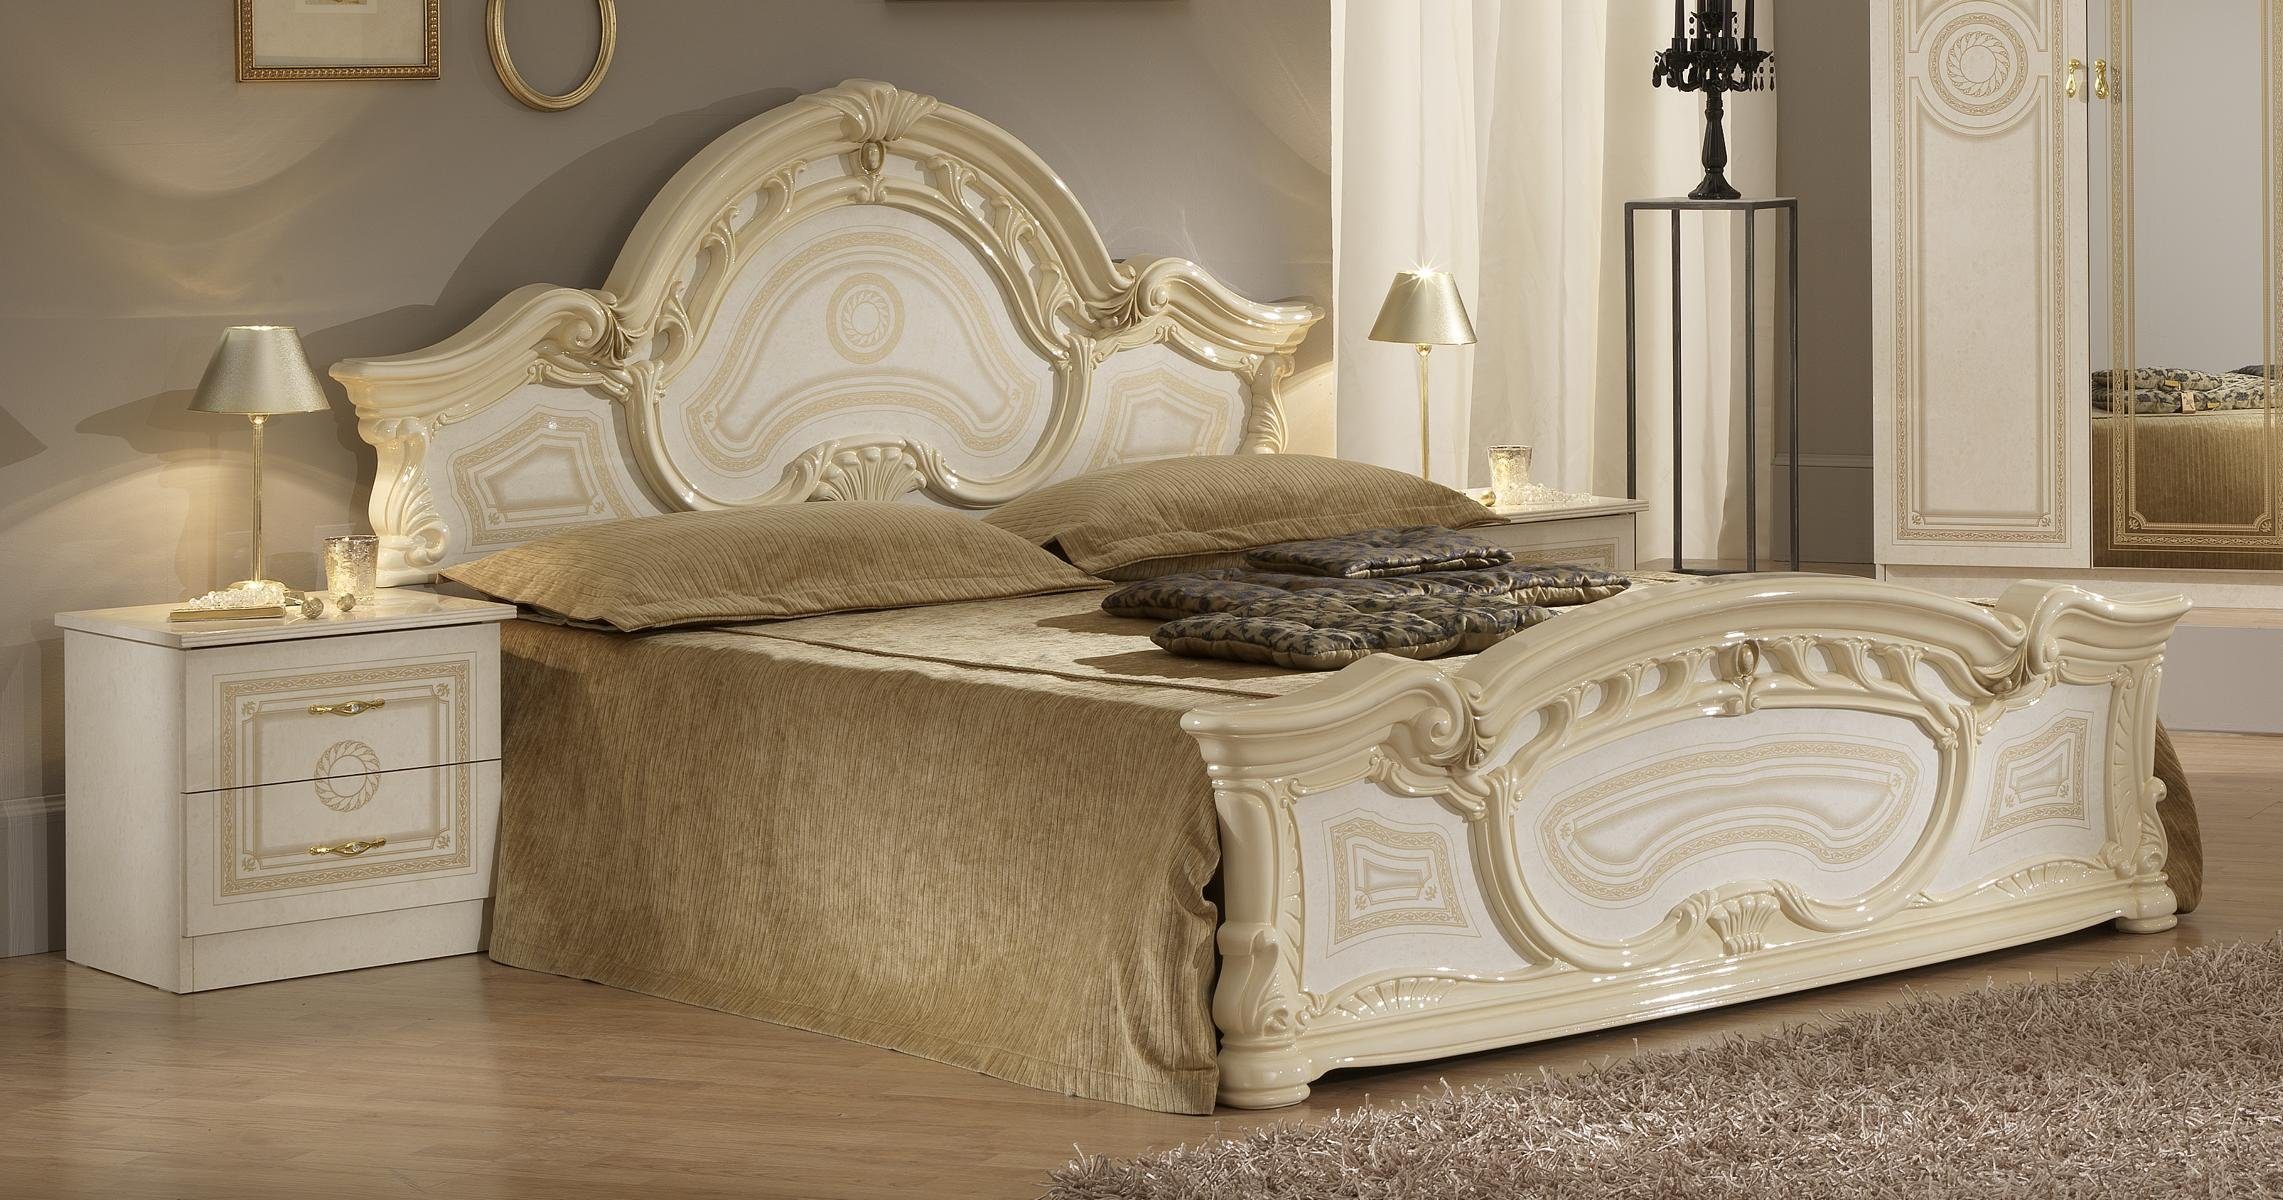 JVmoebel Bett, Hochwertiges Luxus Bett Design Doppel Holz Ehe 160x200cm Neu